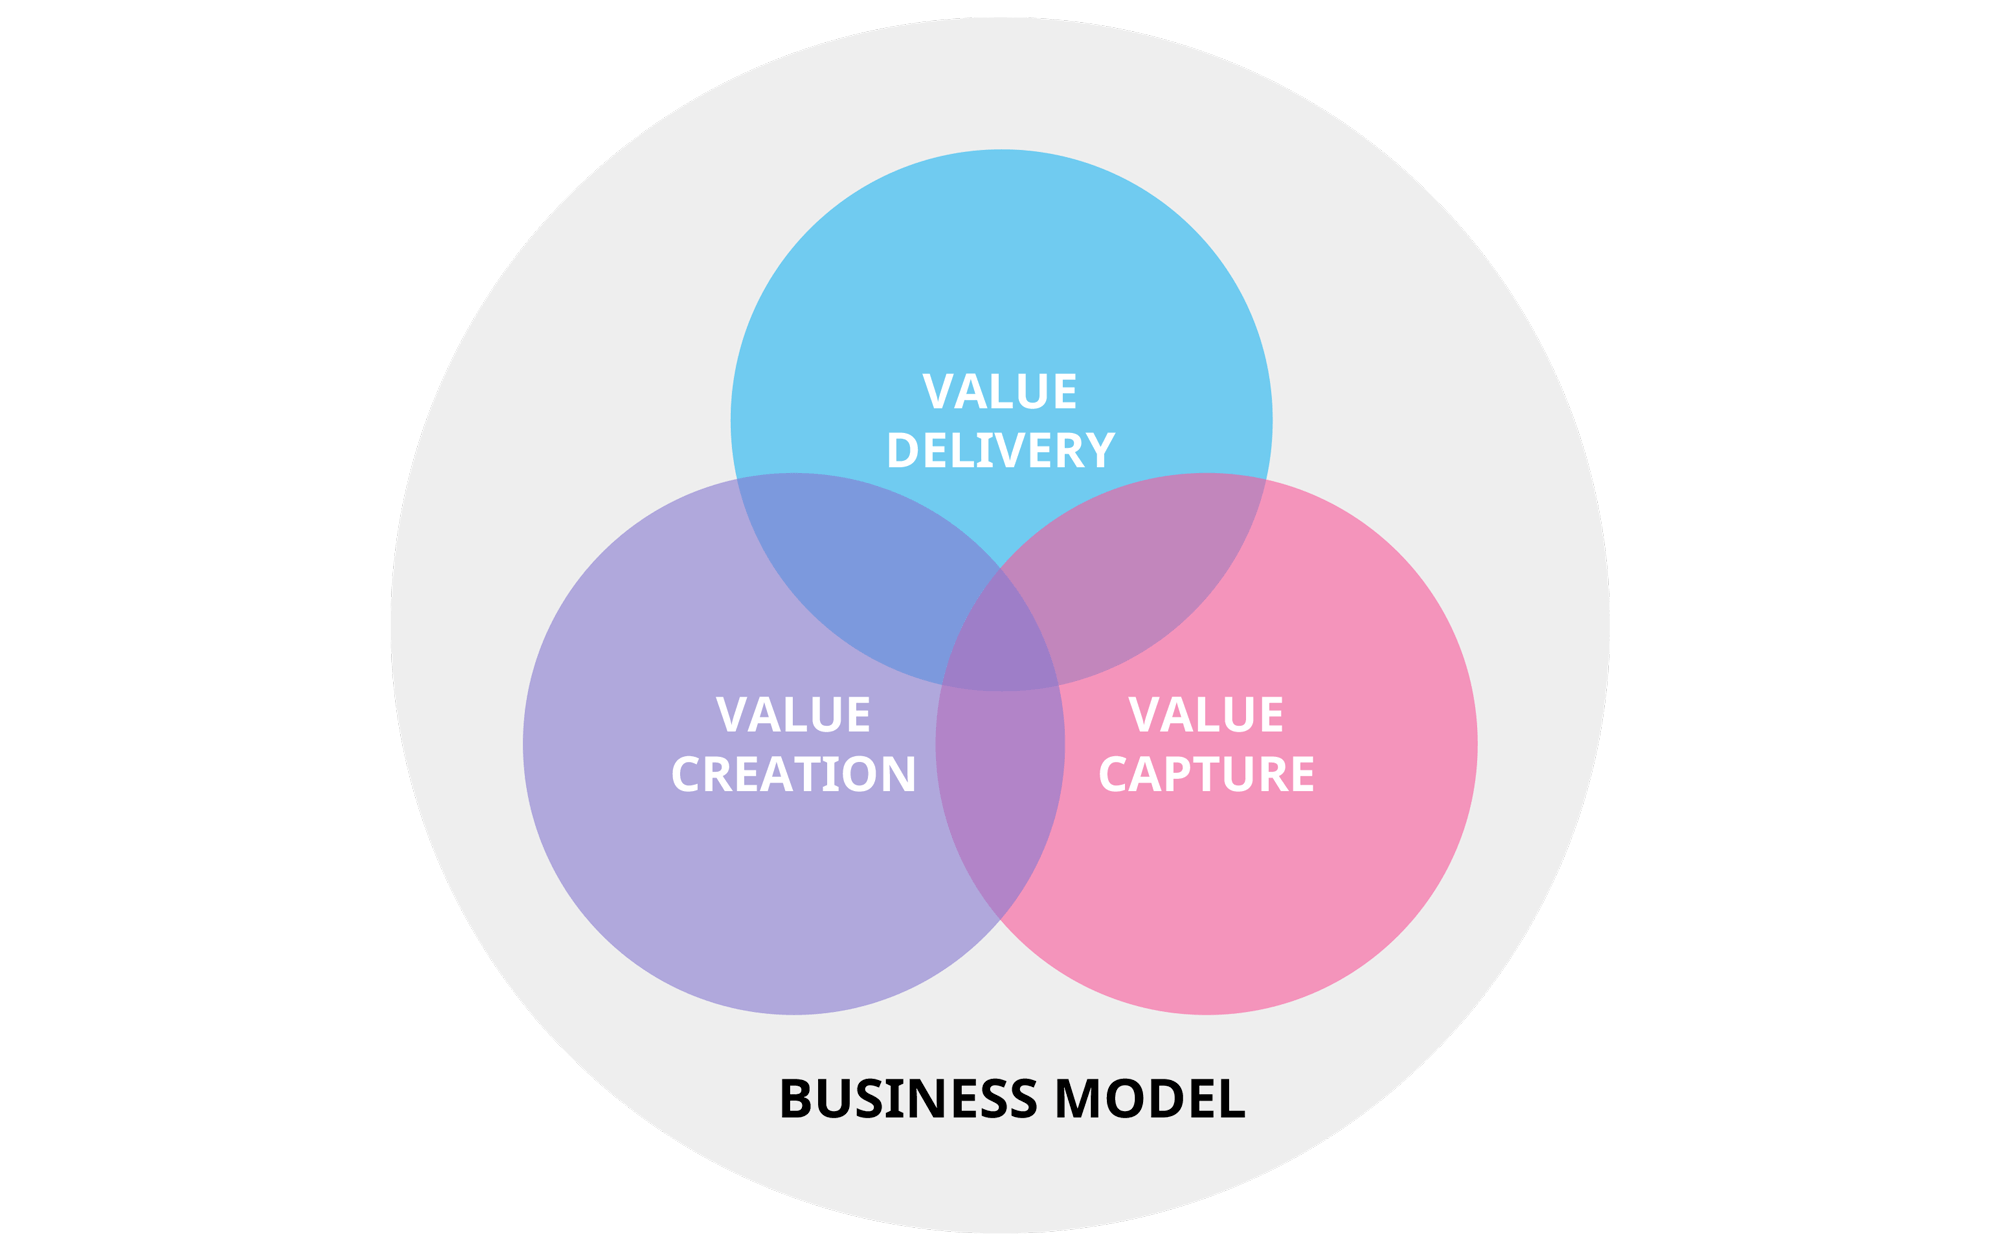 the business model description